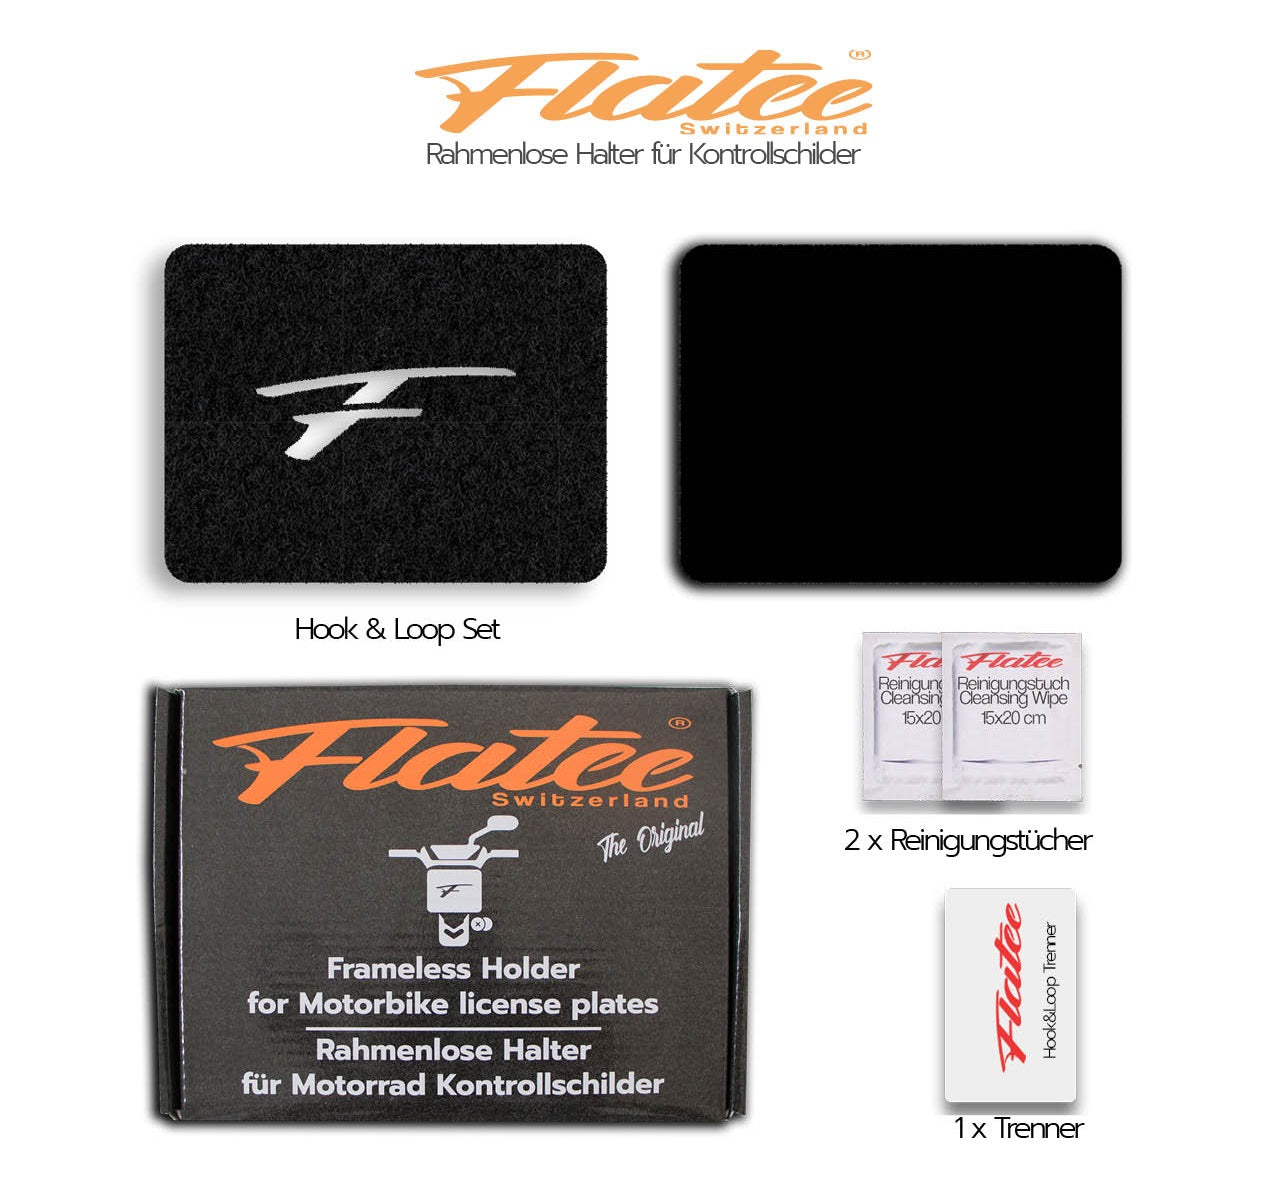 Flatee Original-Set für Motorrad 13x17cm Schweizer Kontrollschilder